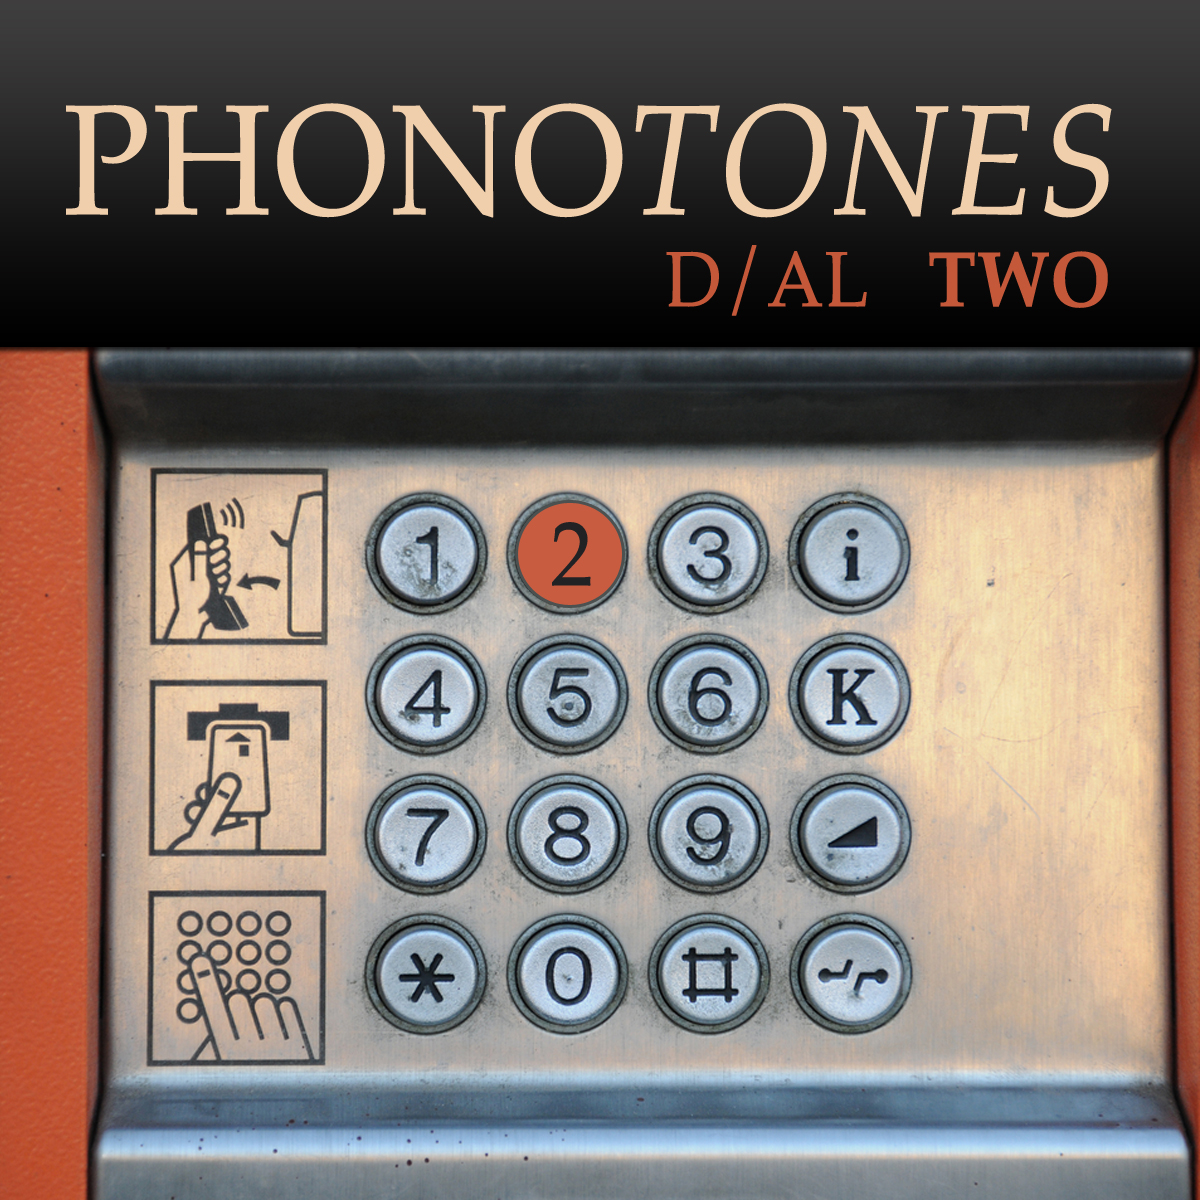 Phonotones - Dial 2